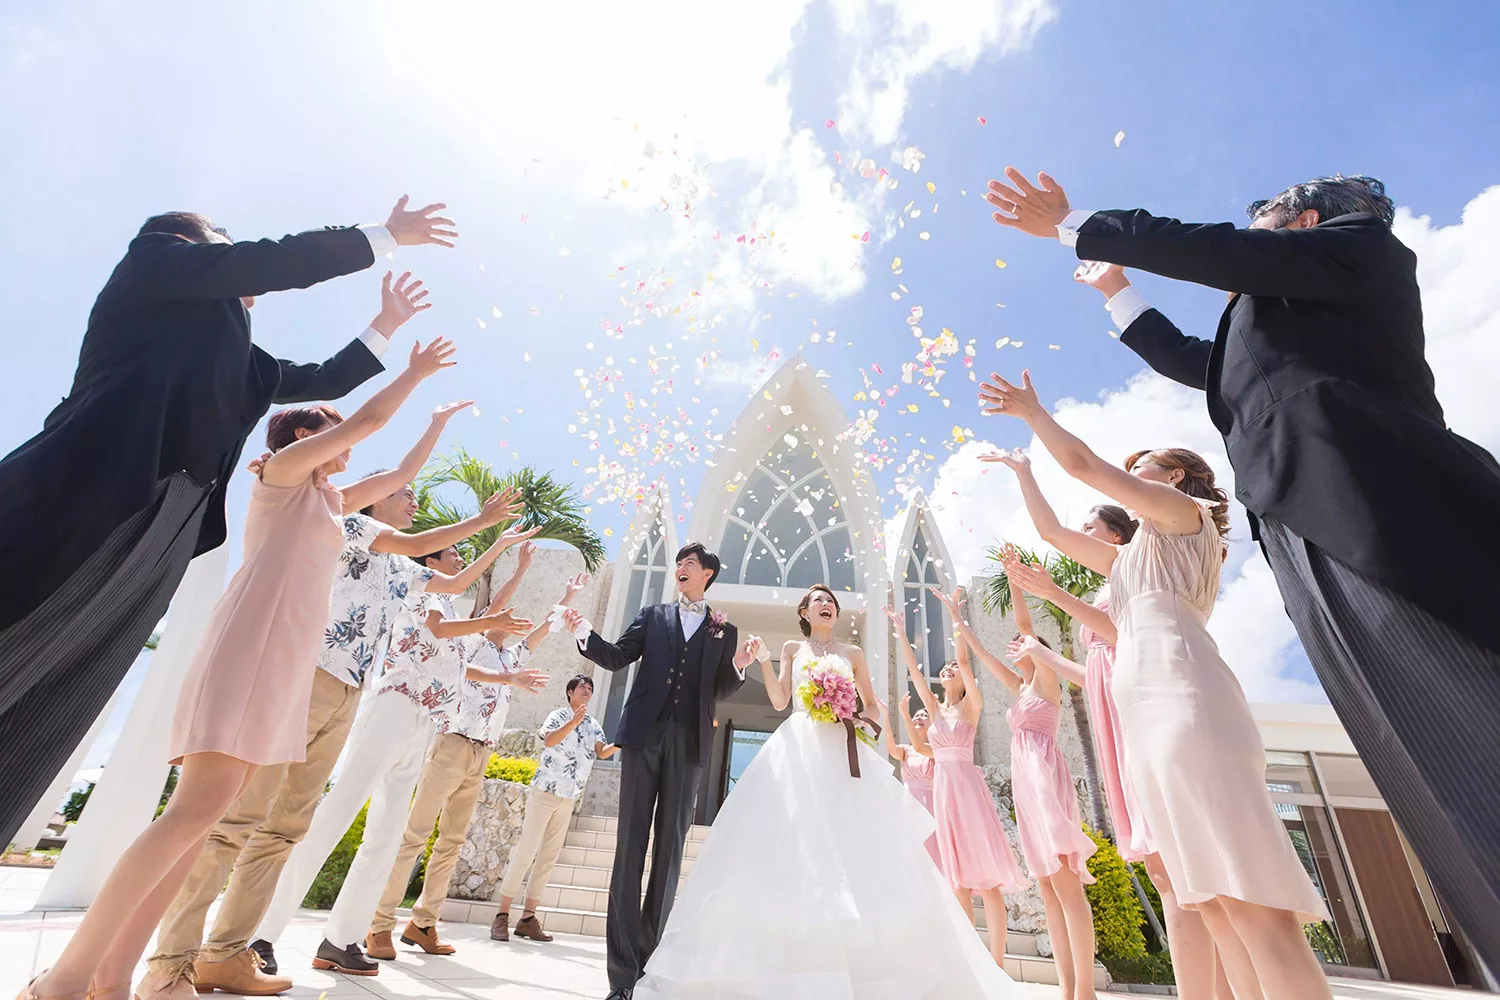 沖繩婚禮獲得眾多台灣新人的青睞。